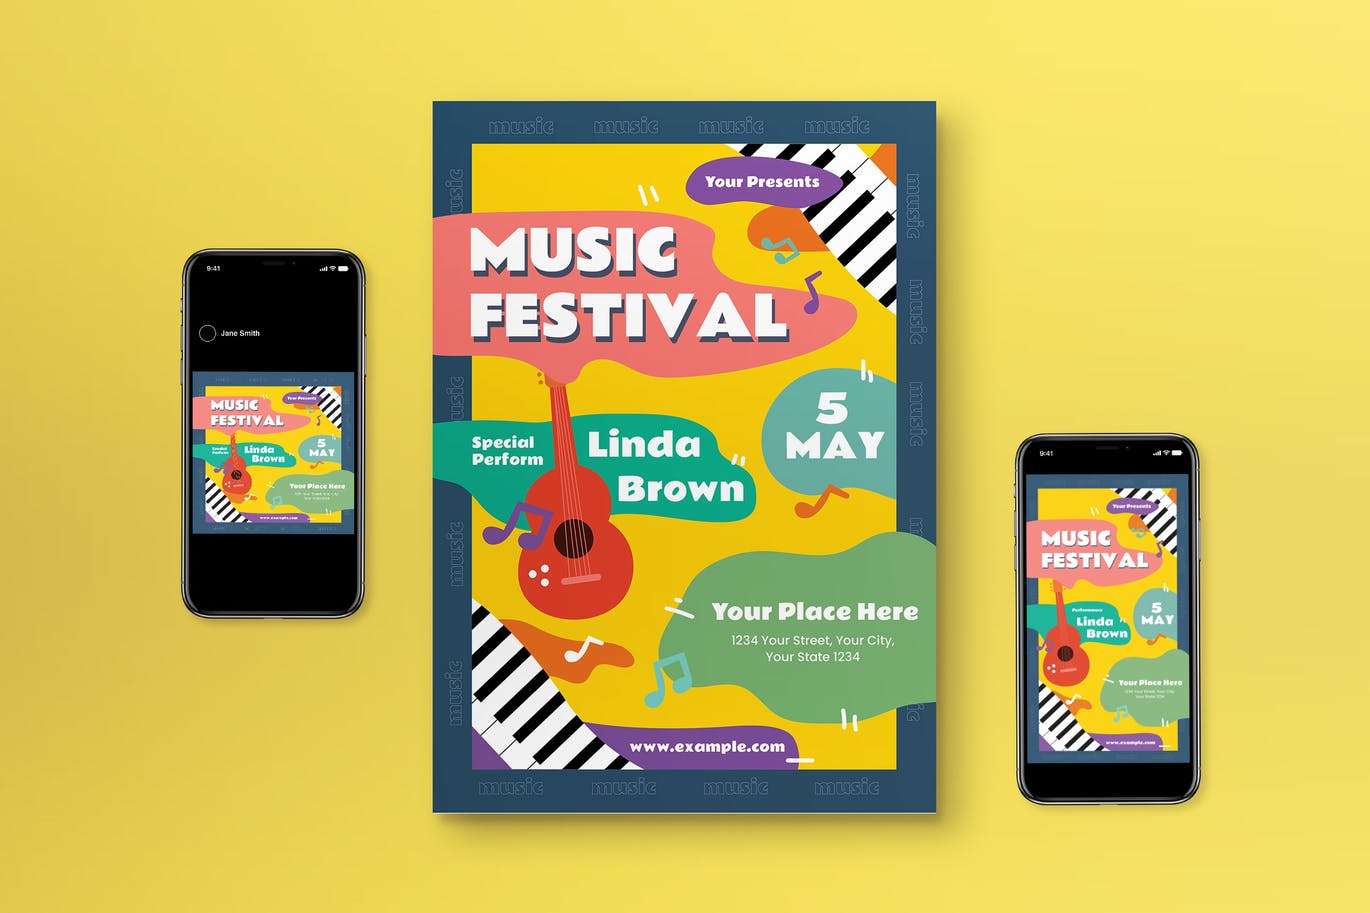 音乐节活动传单模板 Music Festival Flyer Set 设计素材 第1张